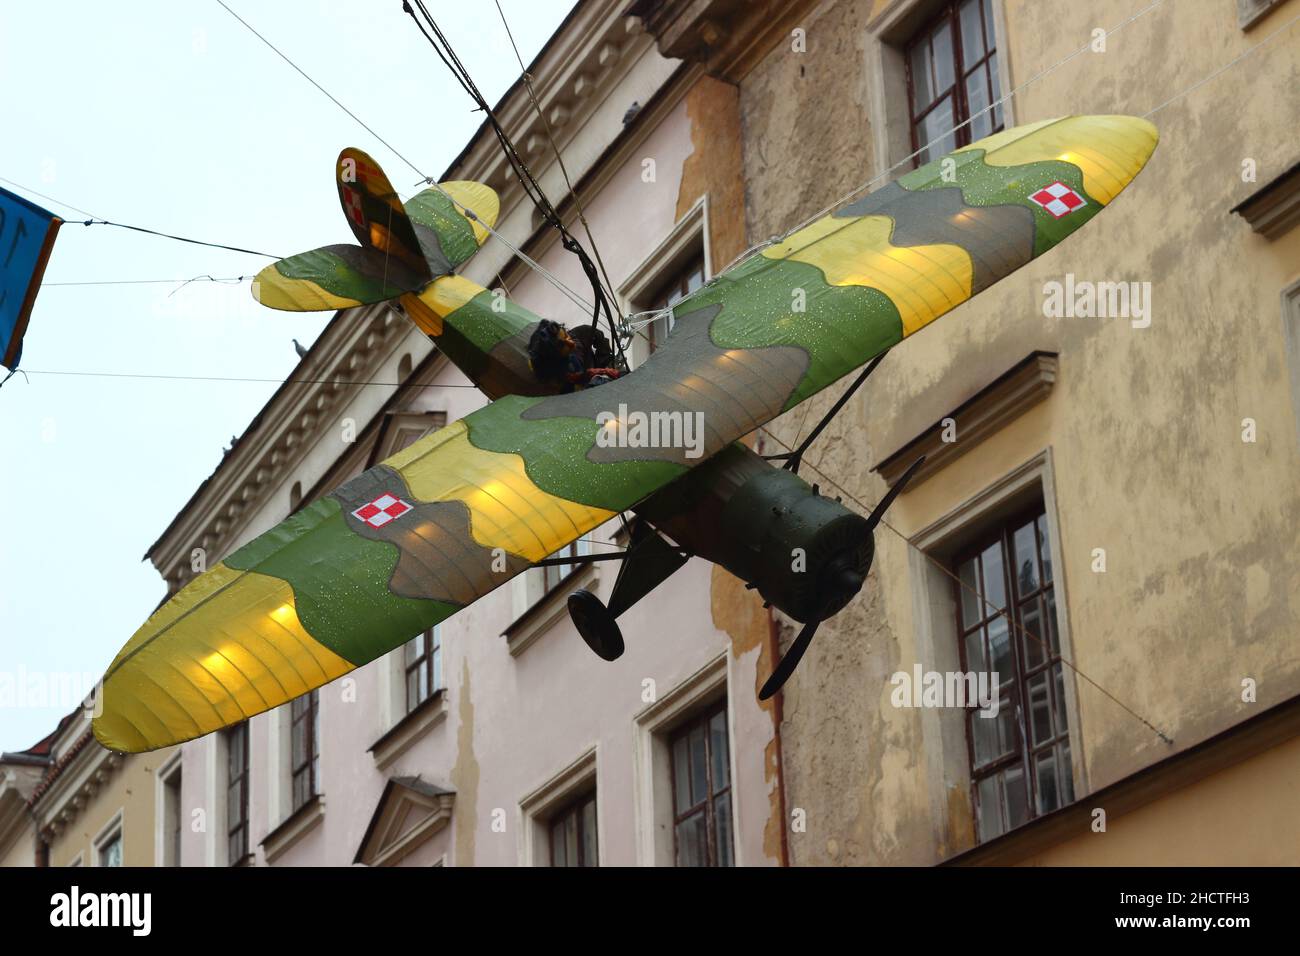 Prise de vue en contre-angle d'un modèle d'avion militaire à Lublin, en Pologne Banque D'Images